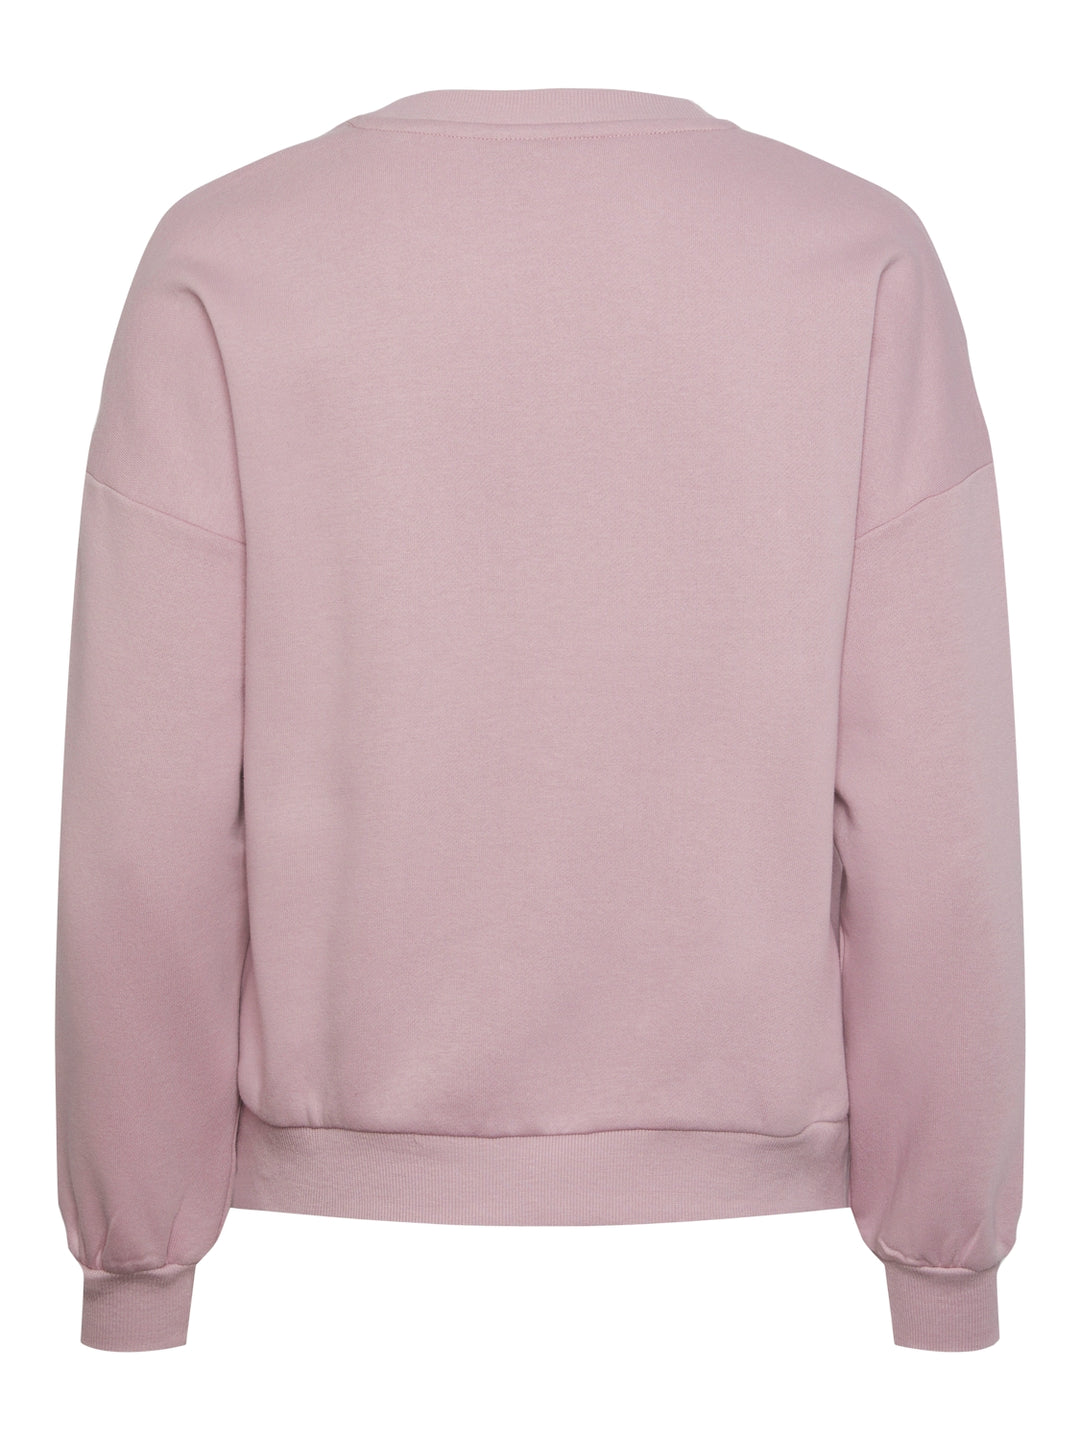 Freya Oversized Sweatshirt - San Francisco Pink